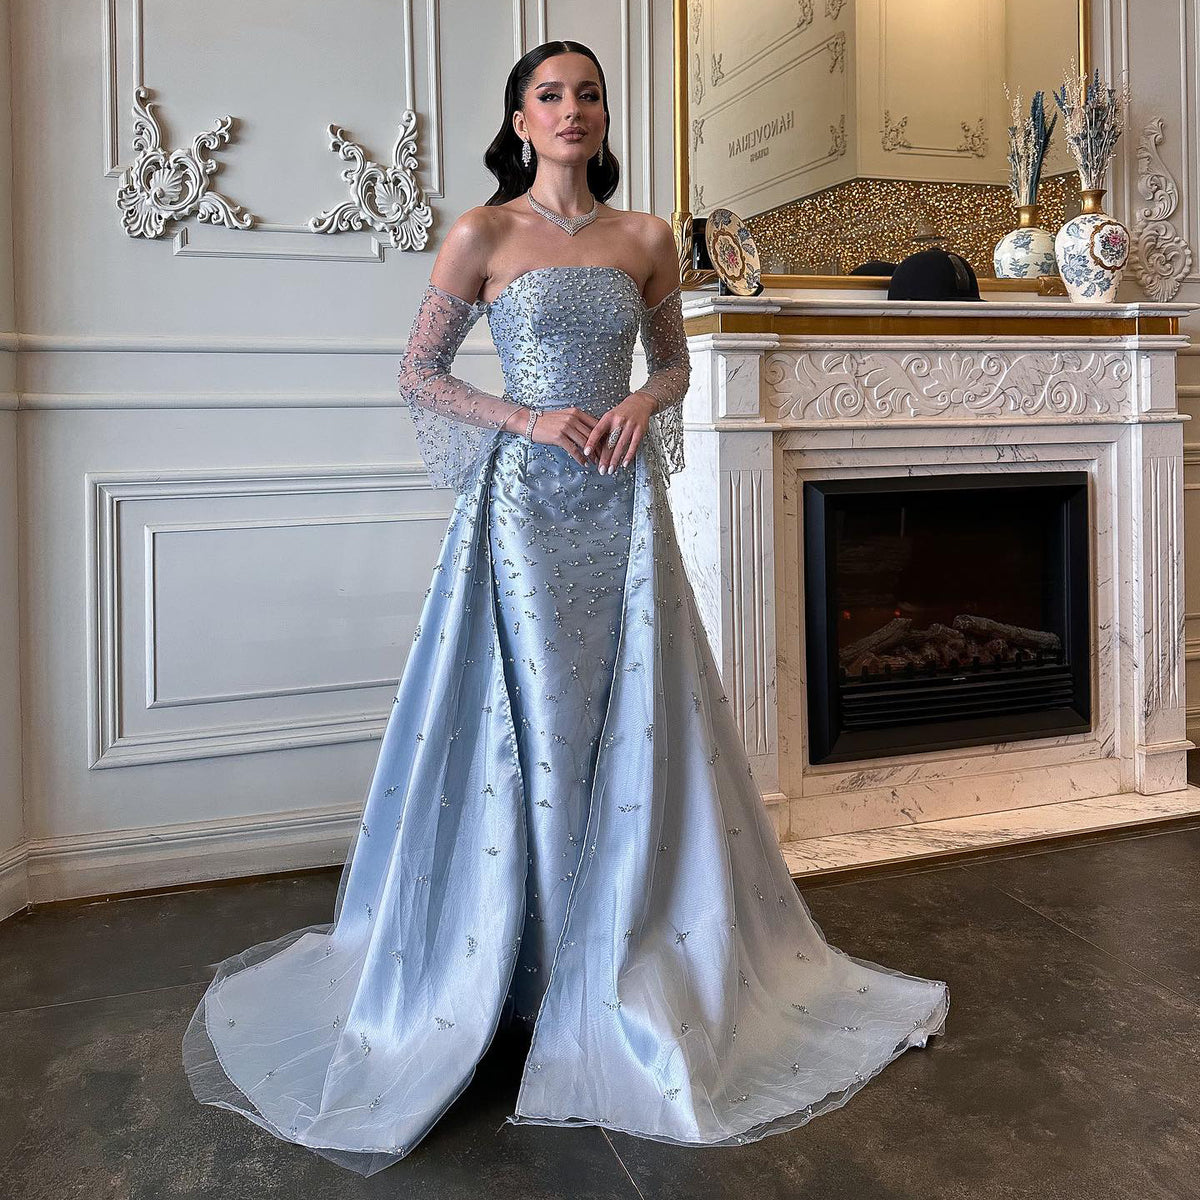 Sharon Said Arabisch Blau Meerjungfrau Luxus Dubai Abendkleider für Frau Hochzeit Party Hohe Split Elegante Abschlussball Formale Kleider SS257